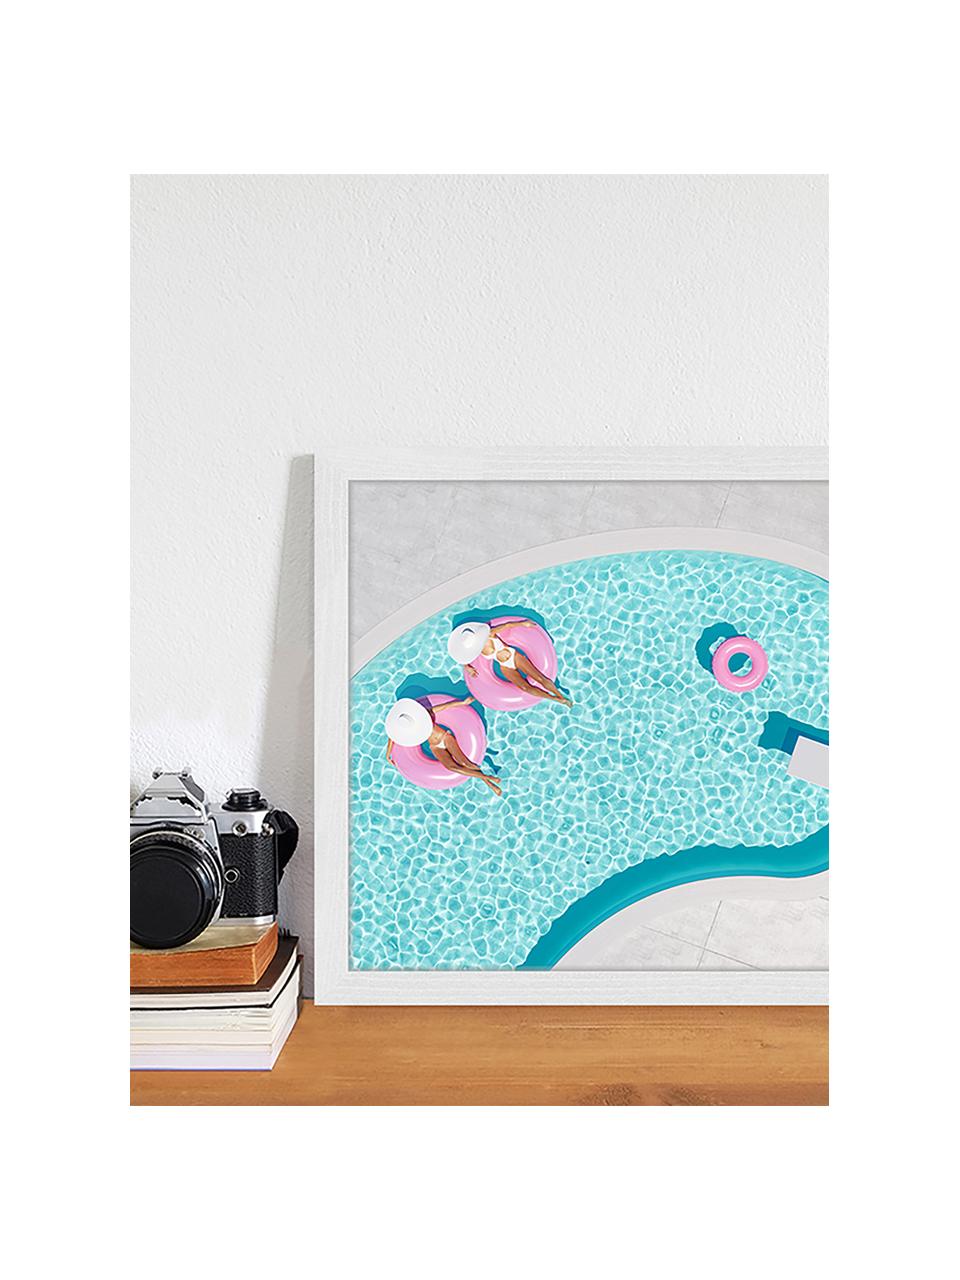 Gerahmter Digitaldruck Pink Vacation, Bild: Digitaldruck auf Papier, , Rahmen: Holz, lackiert, Front: Plexiglas, Mehrfarbig, B 43 x H 33 cm